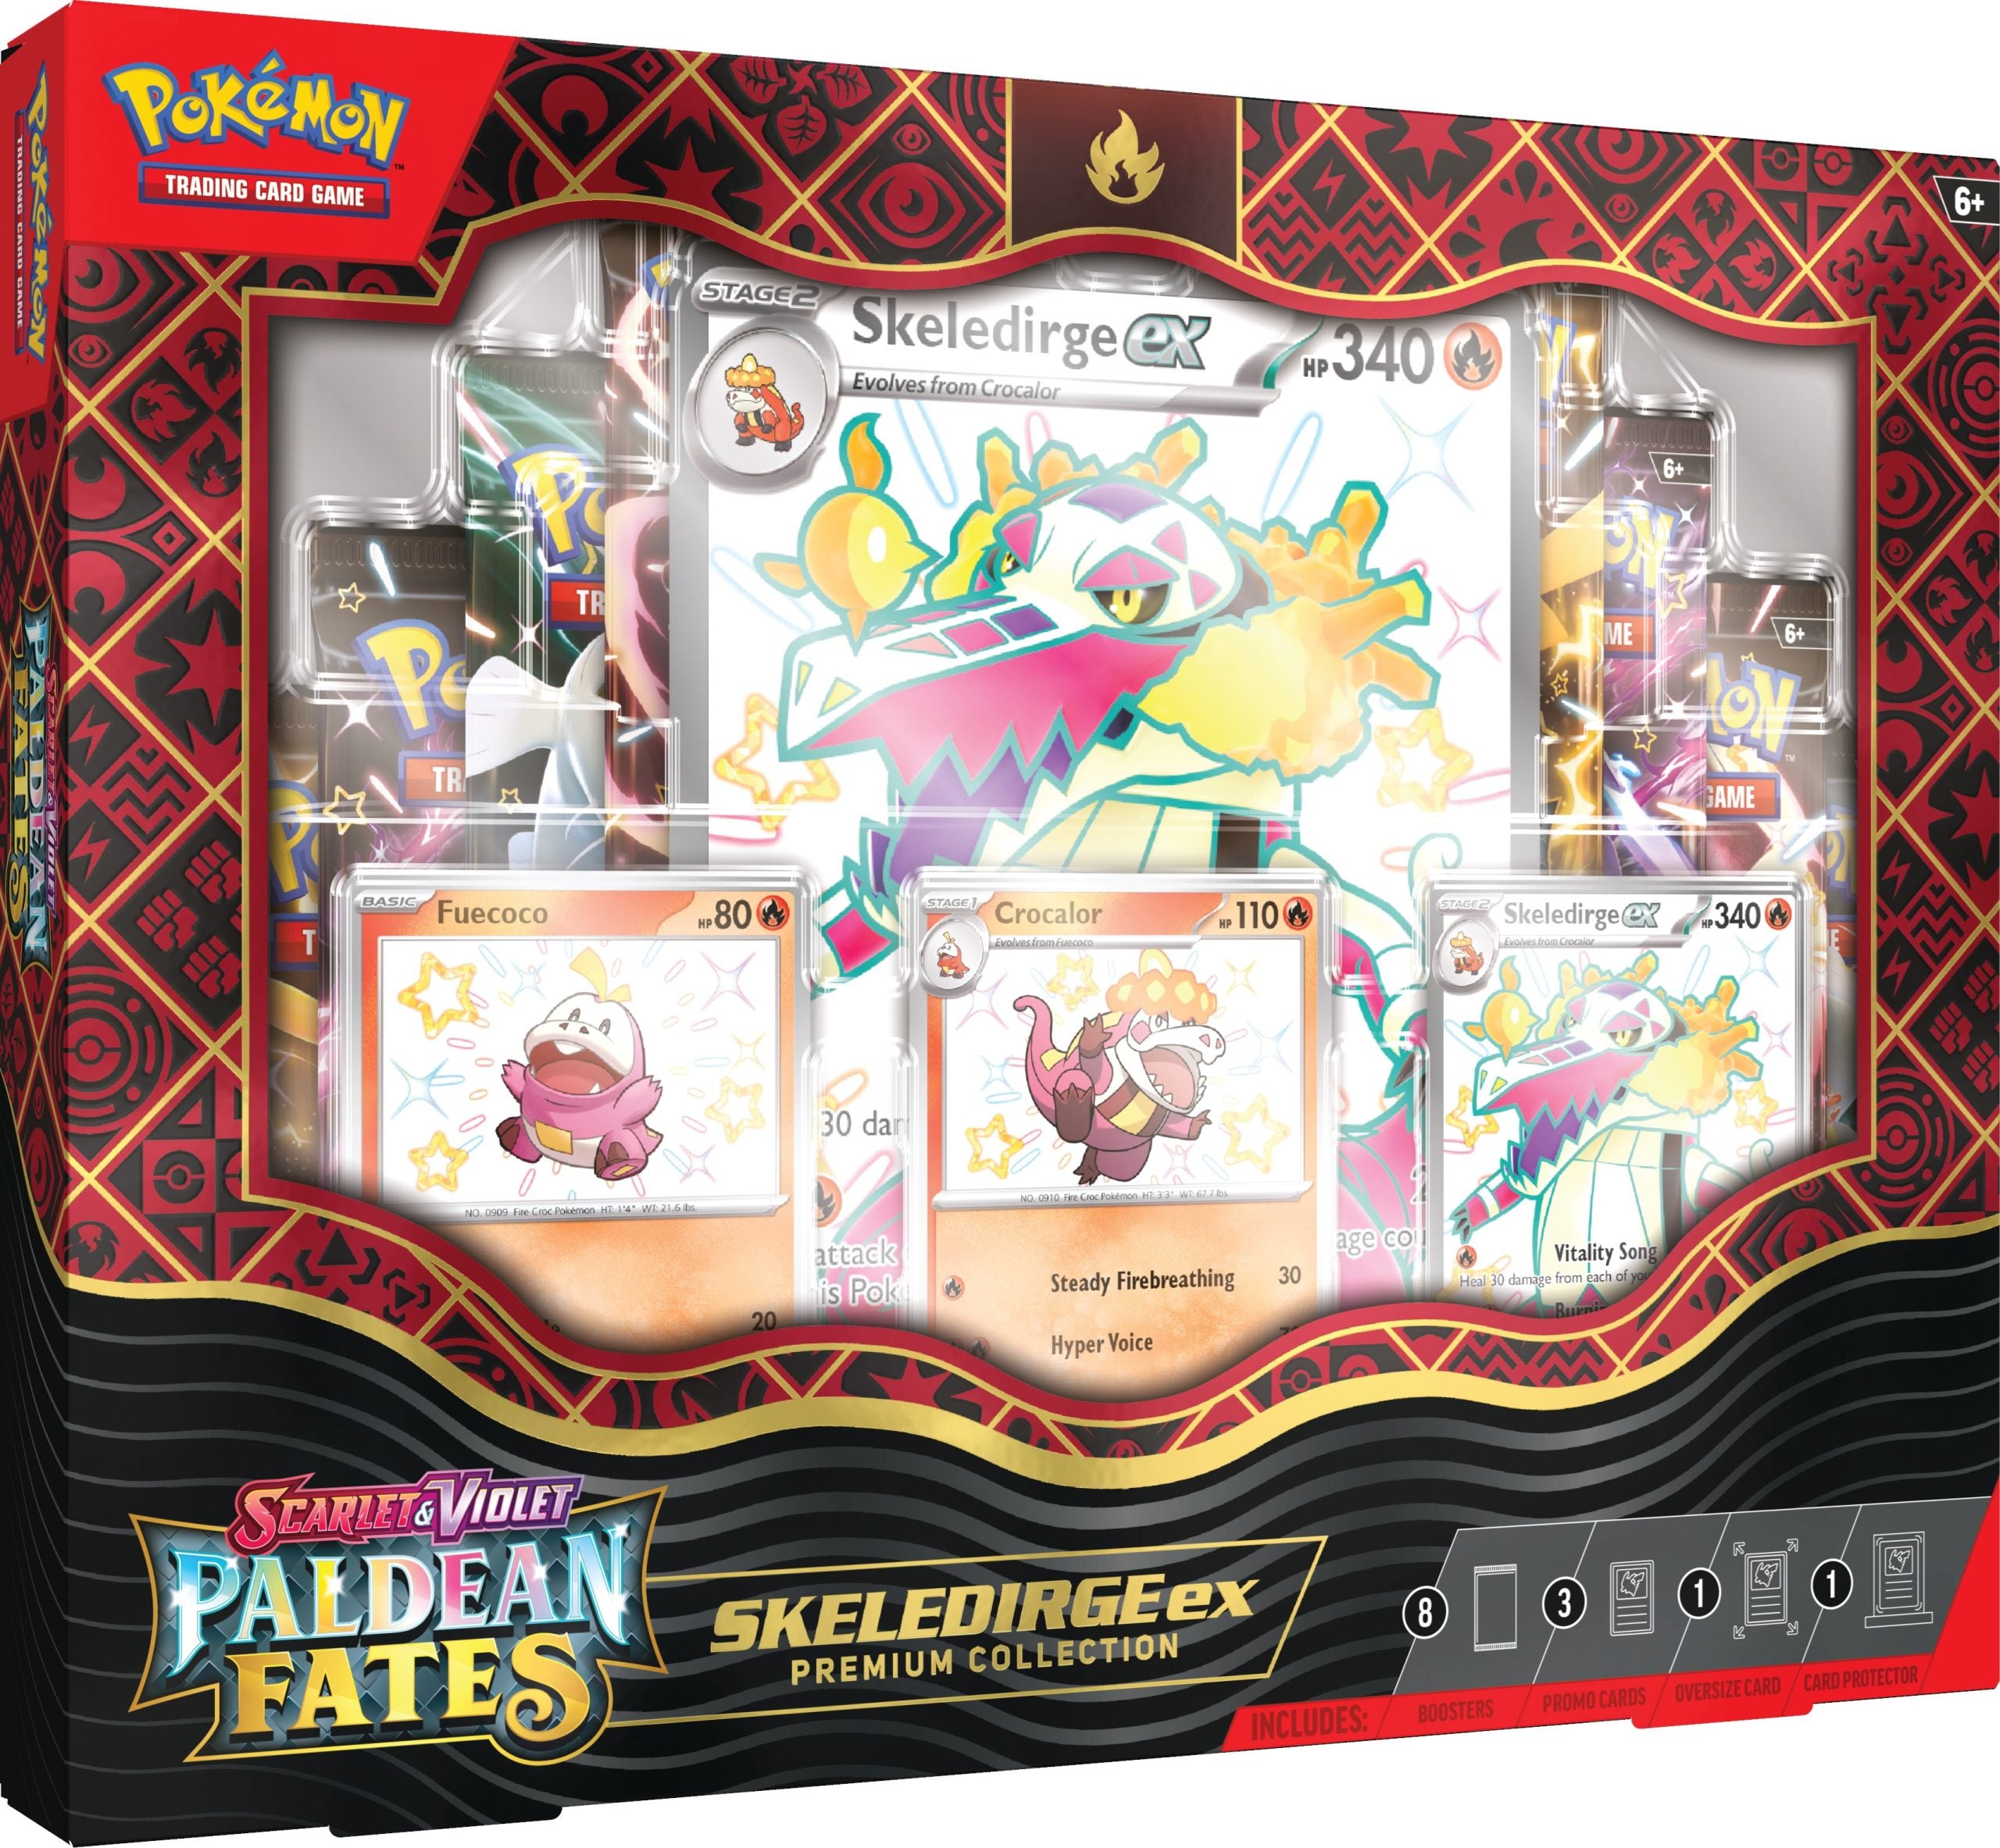 Pokémon TCG: Scarlet & Violet Paldean Fates Skeledirge ex Premium Collection